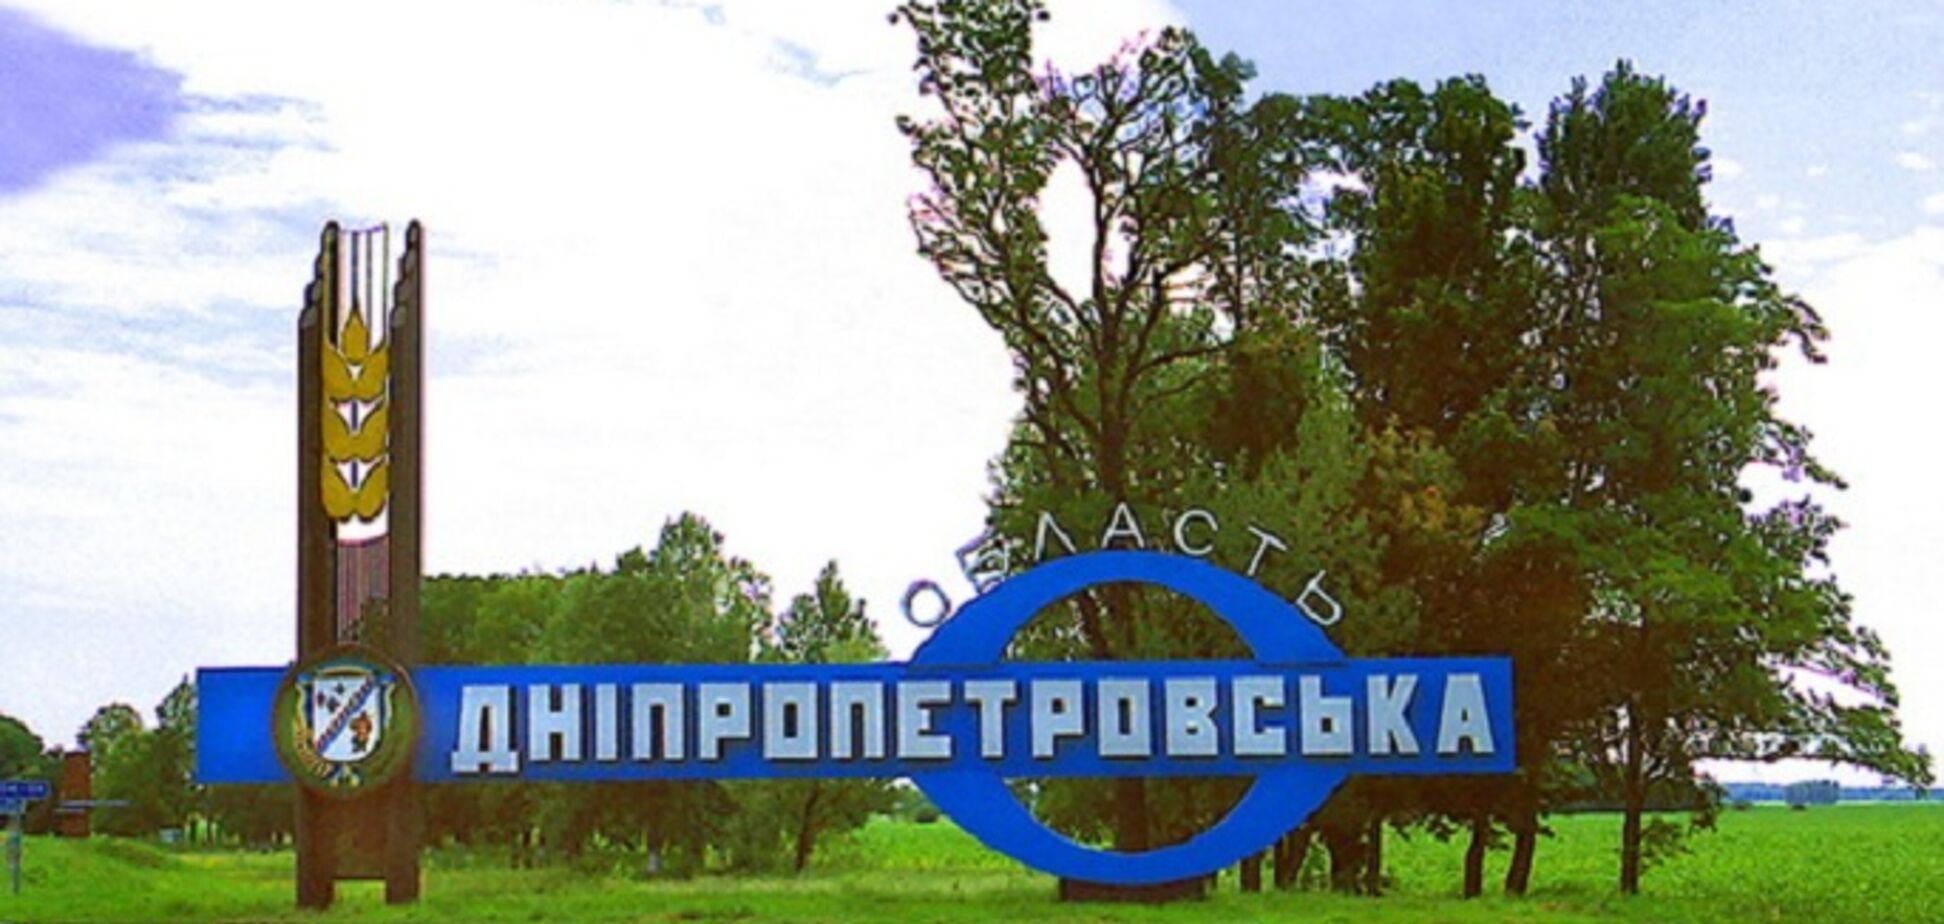 Рада занялась переименованием Днепропетровской области